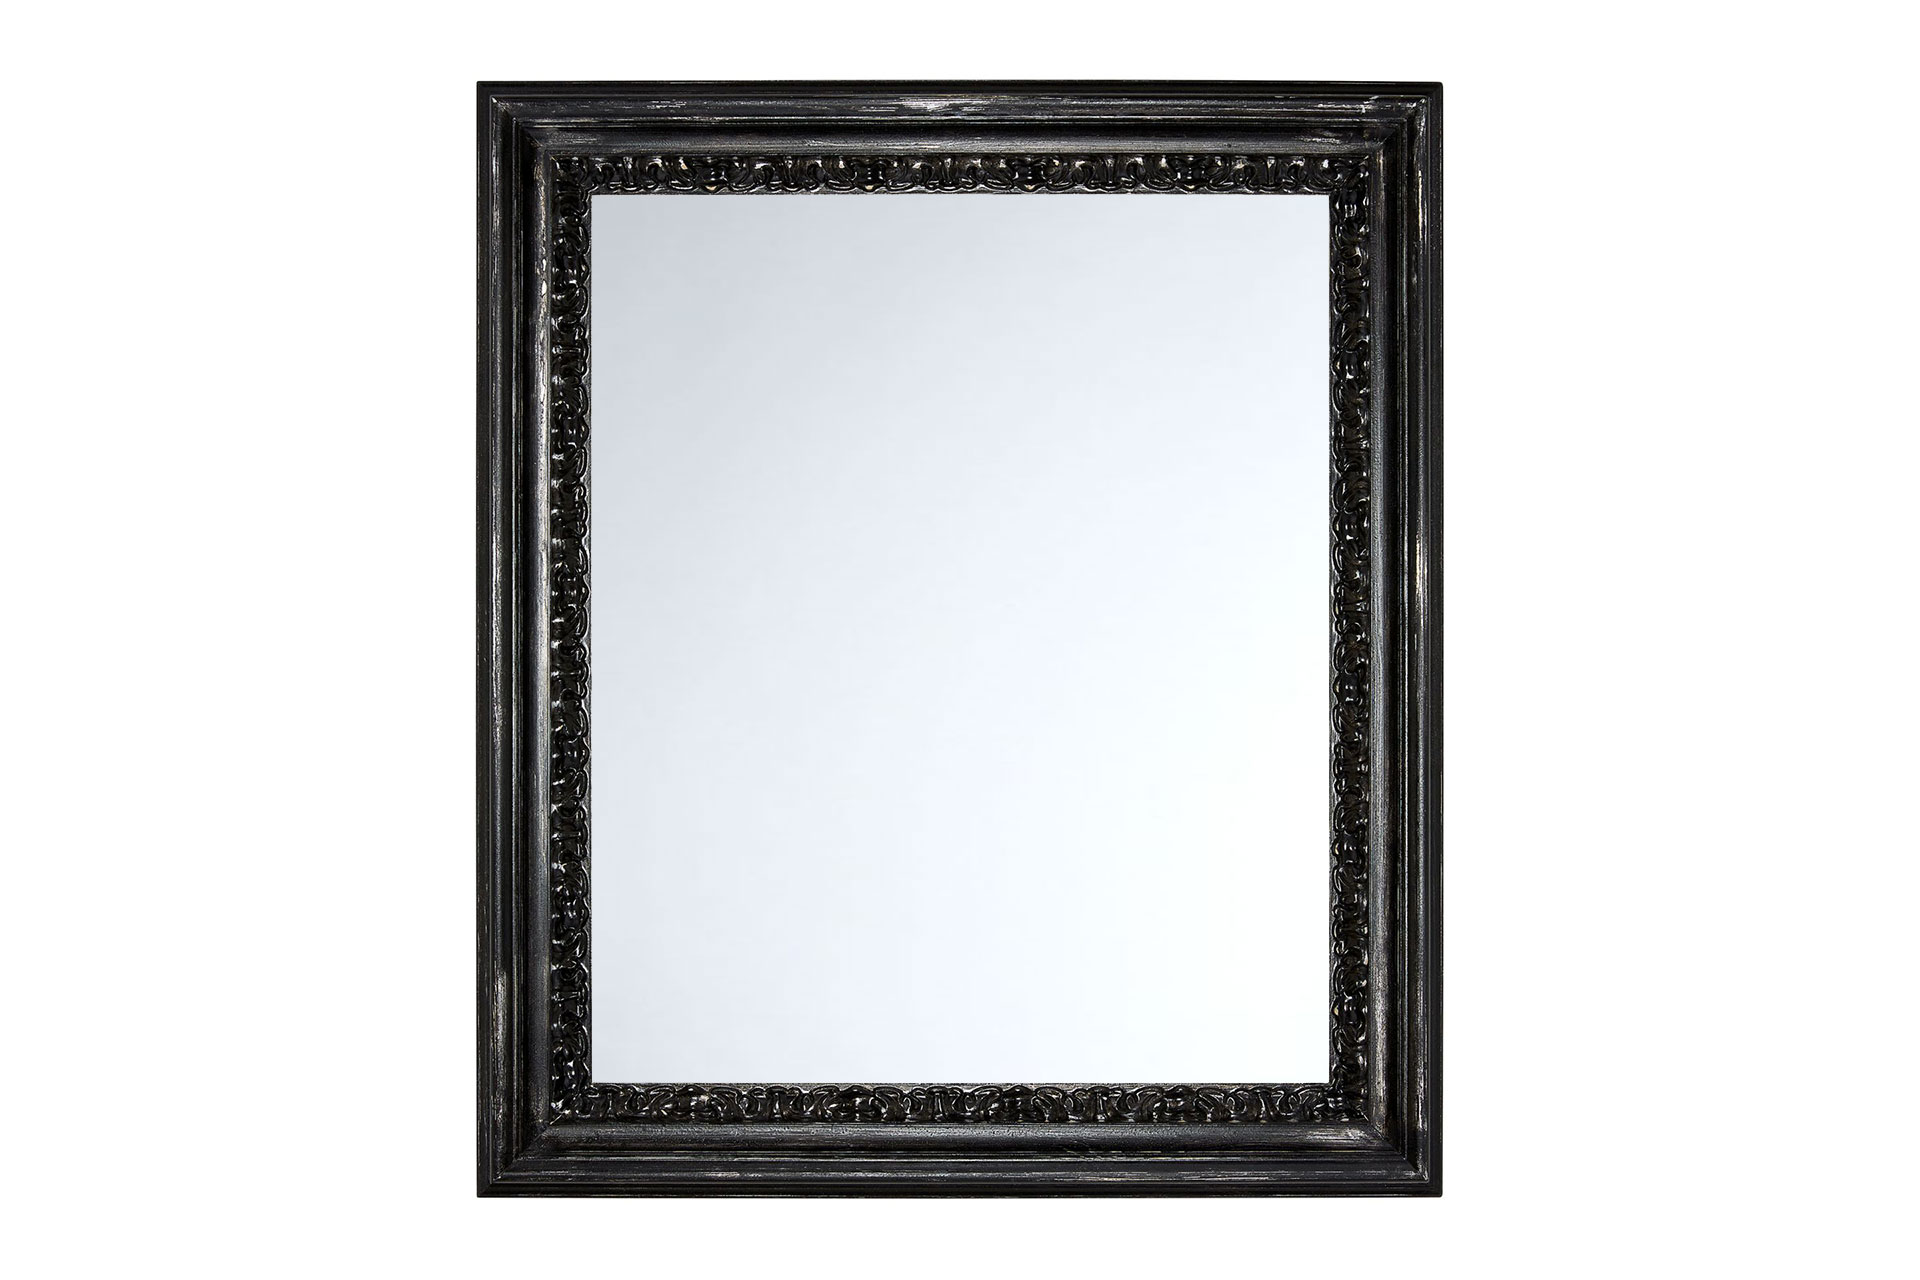 Wandspiegel Shabby-Chic Modell Lens, rechteckig, Farbe: Silber/Schwarz, Shabby-Chic, Frontansicht Rahmen mit Spiegel